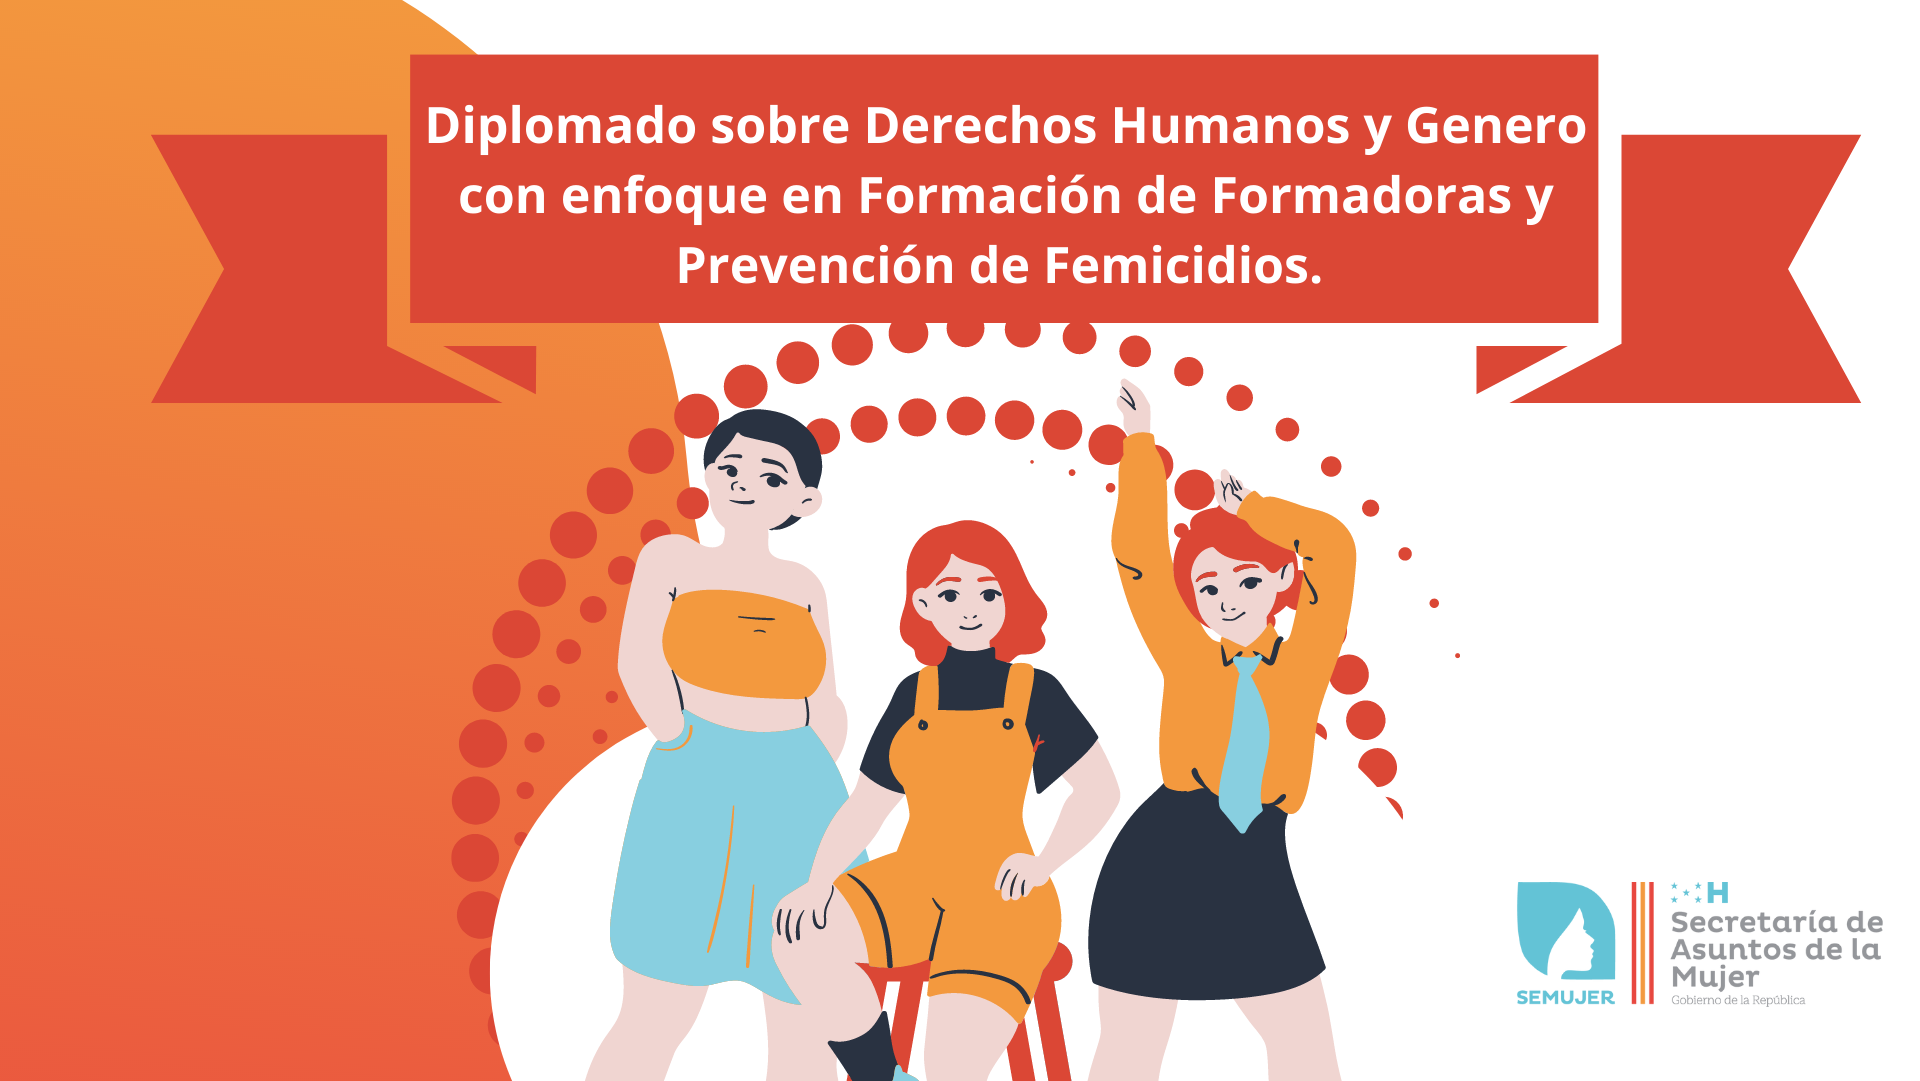 II-Diplomado sobre Derechos Humanos y Género con enfoque en formación de formadoras y prevención de femicidios.